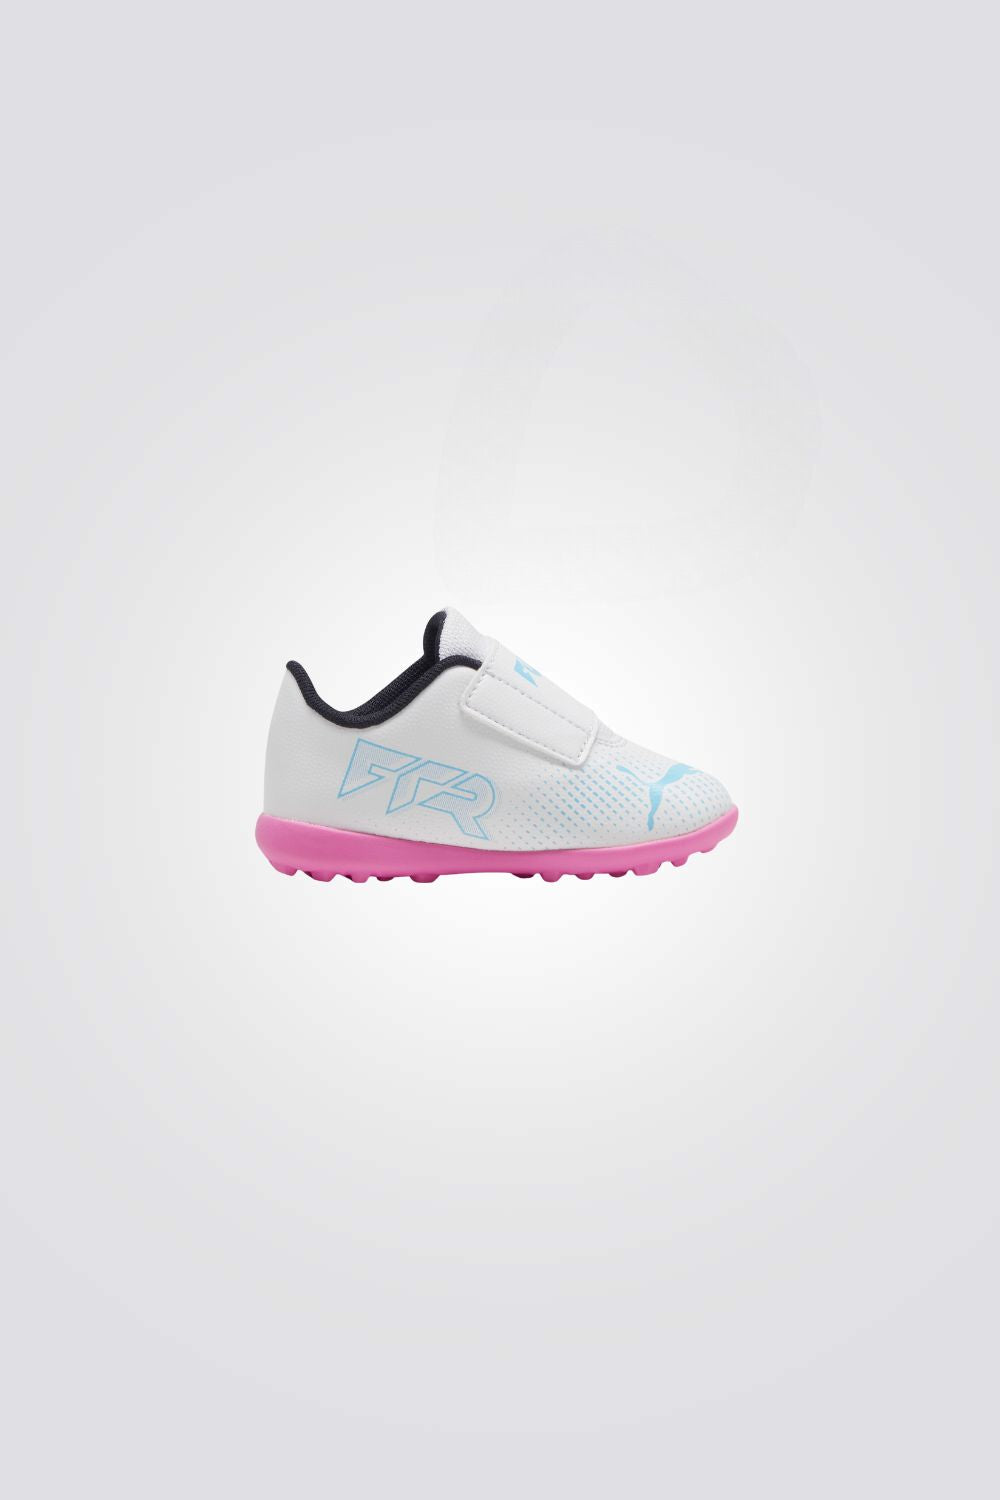 נעלי קטרגל לתינוקות FUTURE 7 PLAY בצבע לבן וורוד